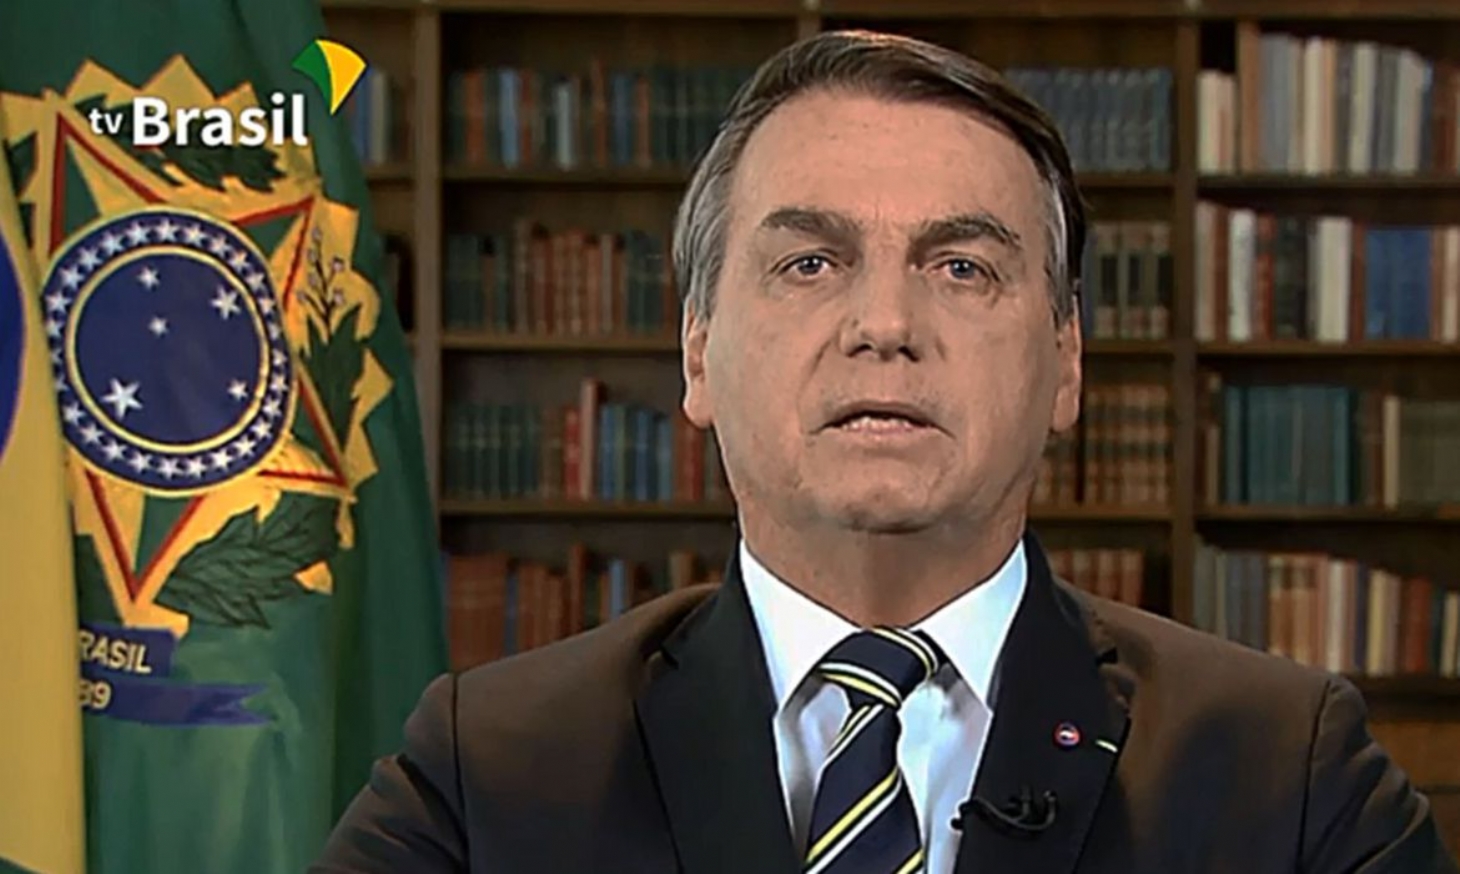 Amazônia será tema de Bolsonaro em discurso na ONU | Jornal da Orla